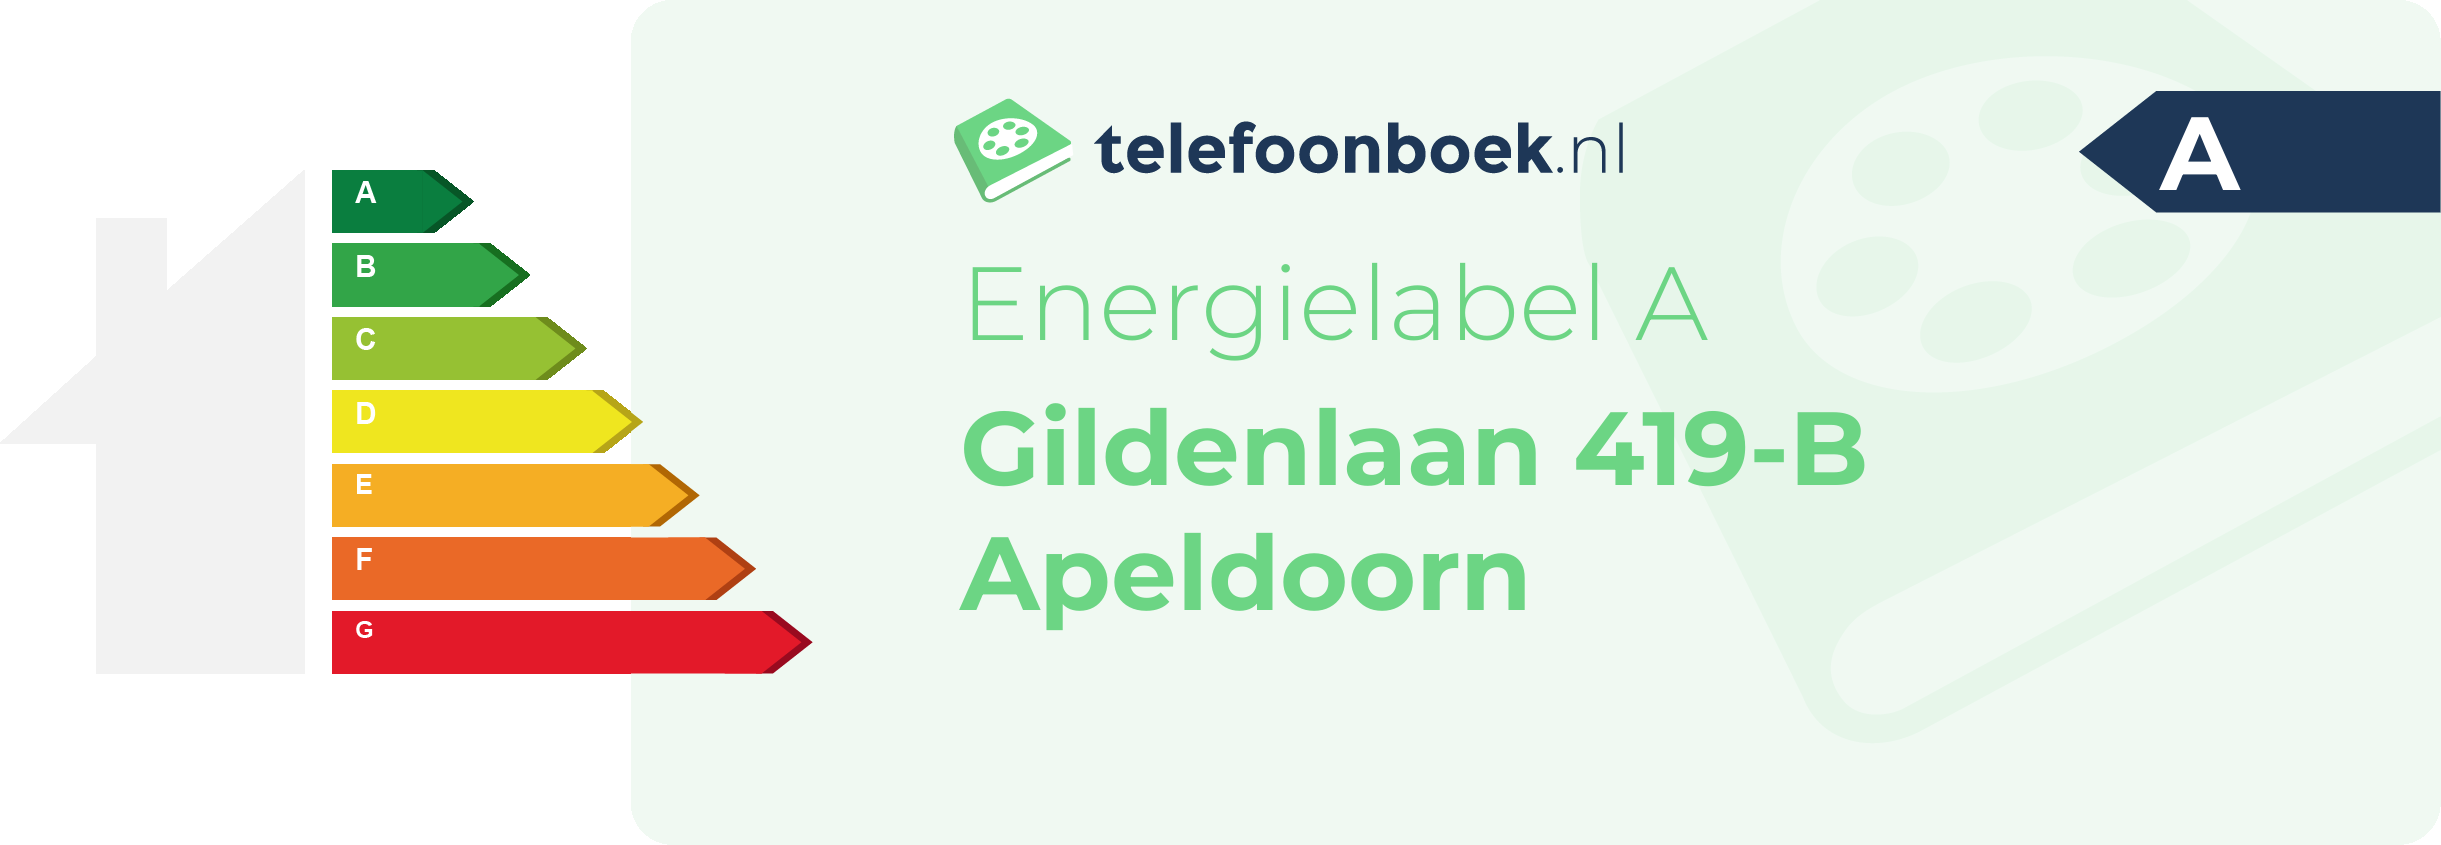 Energielabel Gildenlaan 419-B Apeldoorn